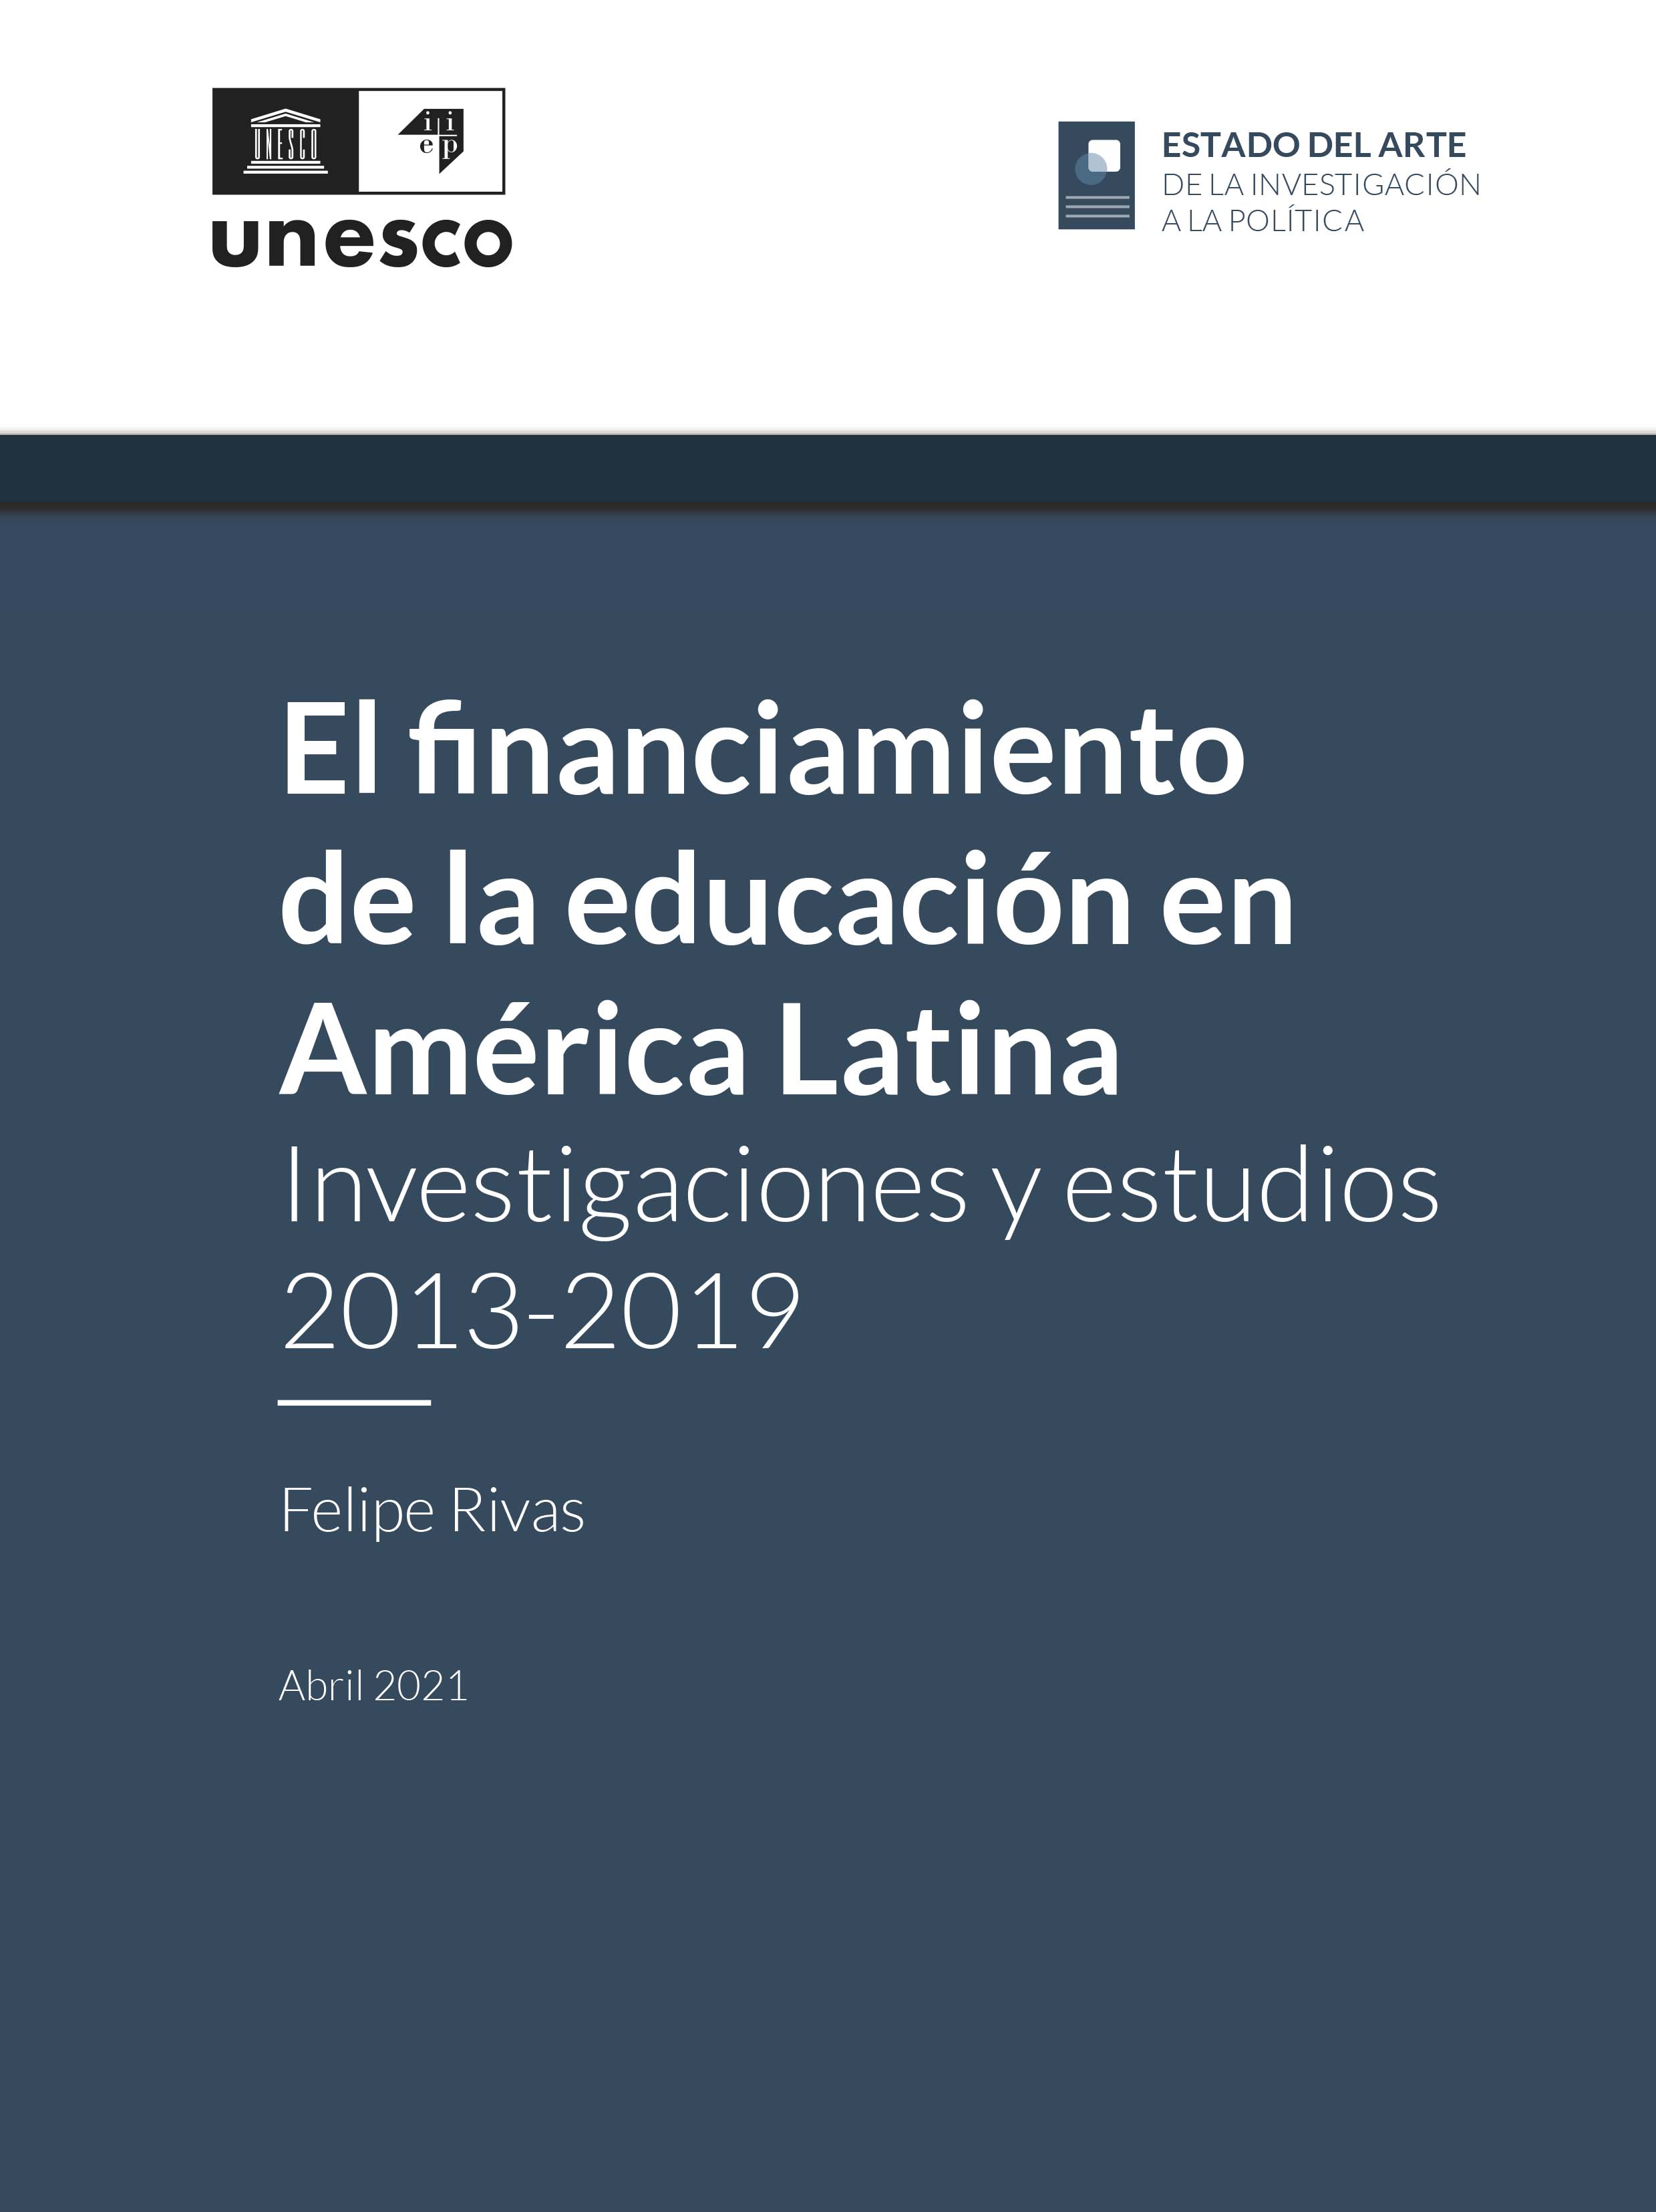 El Financiamiento de la educación en América Latina